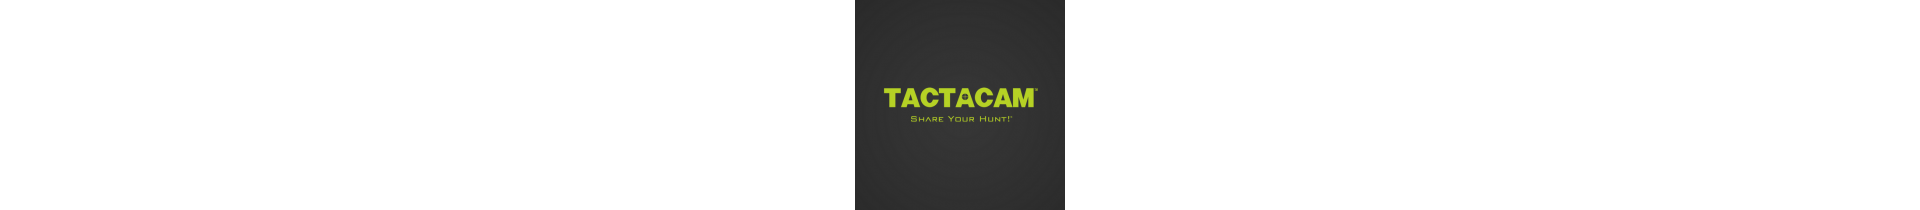 Retrouvez sur www.tactirshop.fr les produits Tactacam